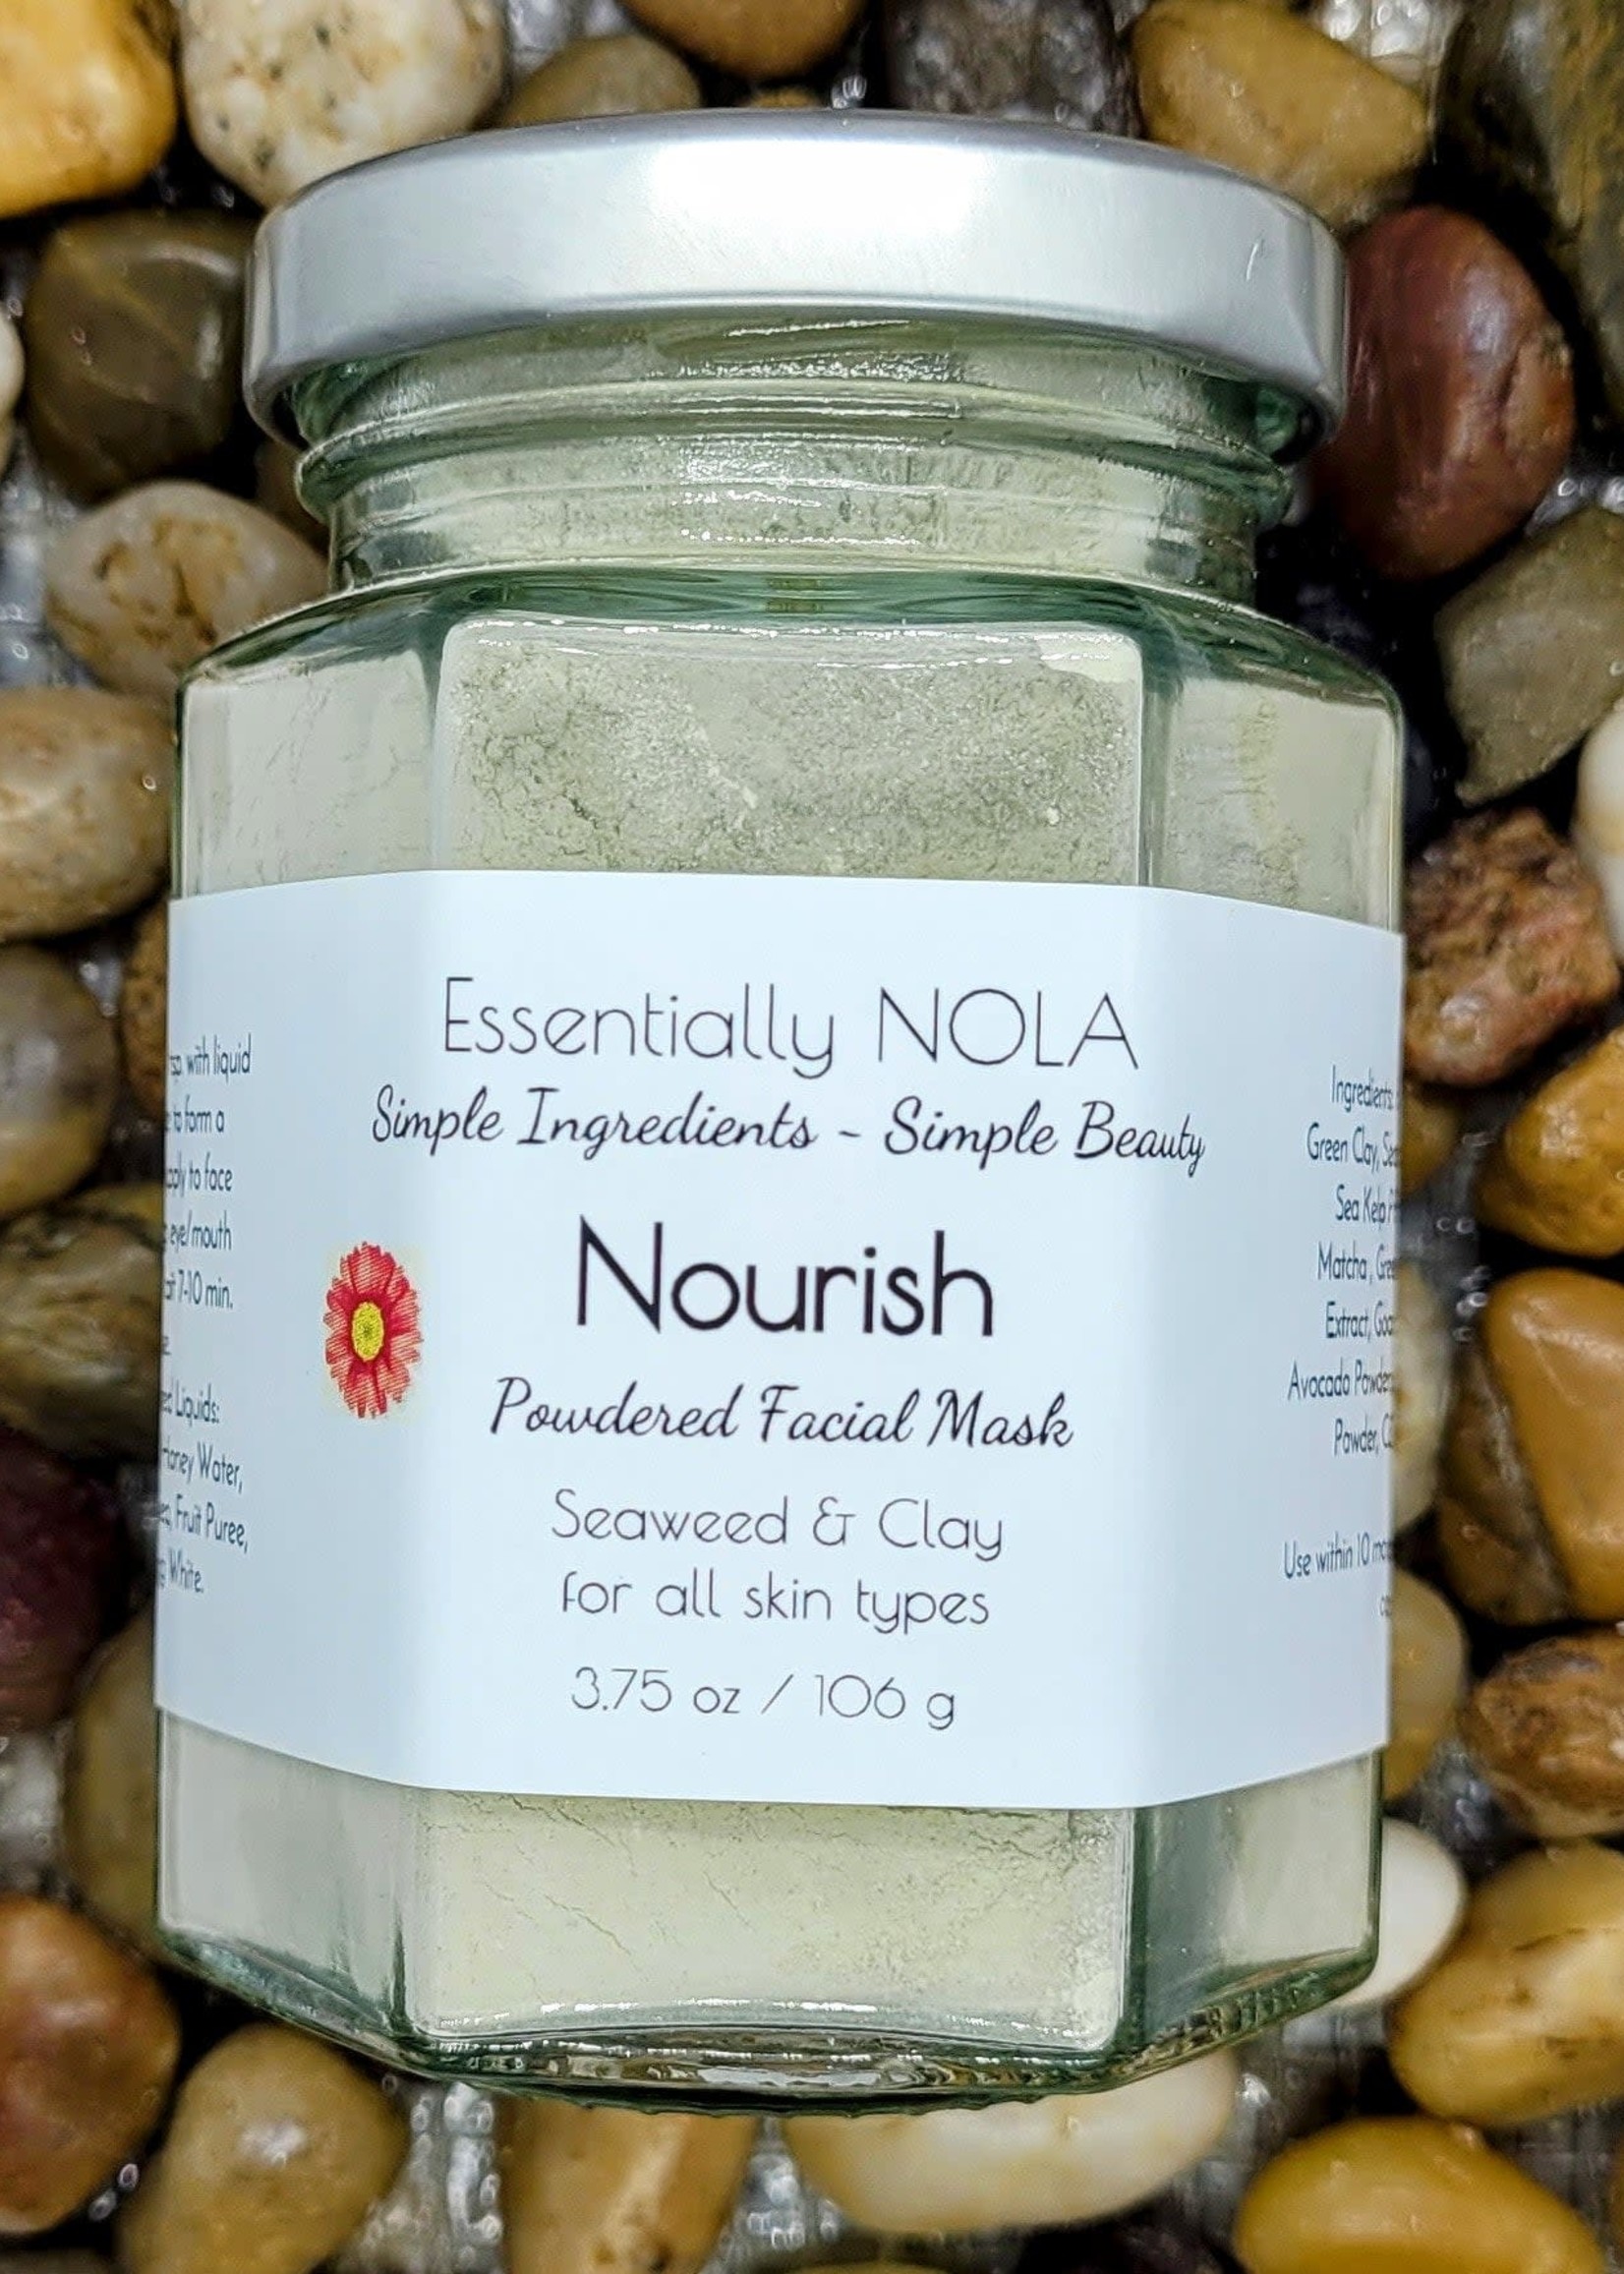 Essentially NOLA Essentially NOLA Nourish Seaweed & Clay Facial Mask, 3.75oz